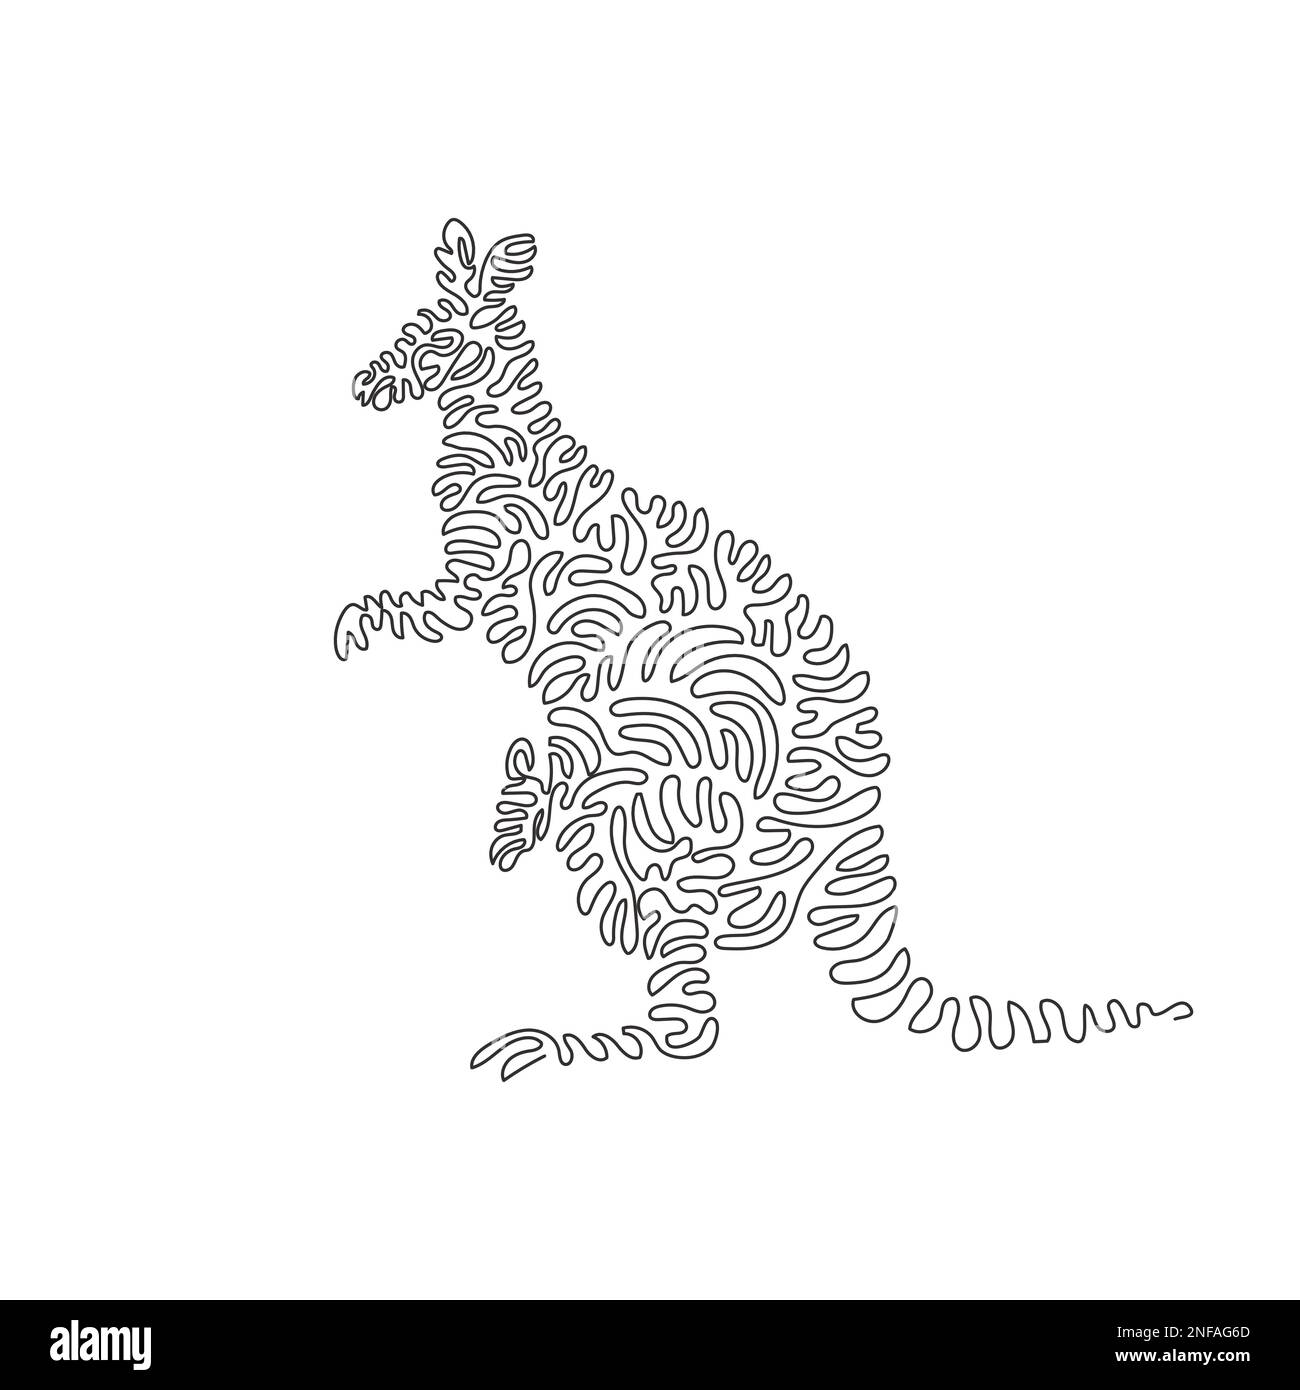 Eine lockige, einzeilige Zeichnung von Kängurus hat starke Hinterbeine. Durchgehende Linien zeichnen Grafikvektor Darstellung eines starken Kängurus Stock Vektor